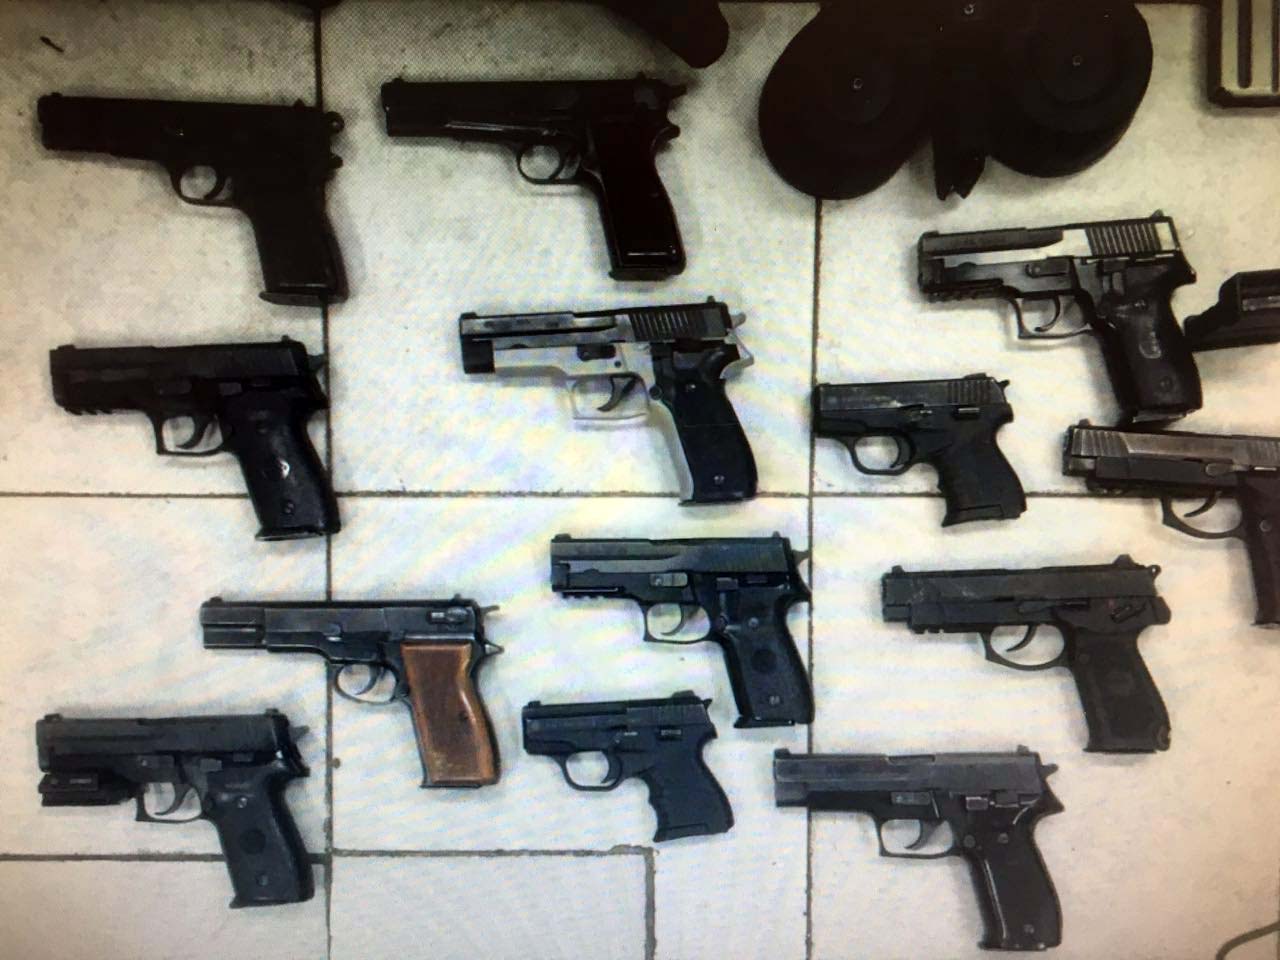 באמצעי הלחמה נתפסו 13 אקדחים מסוגים שונים